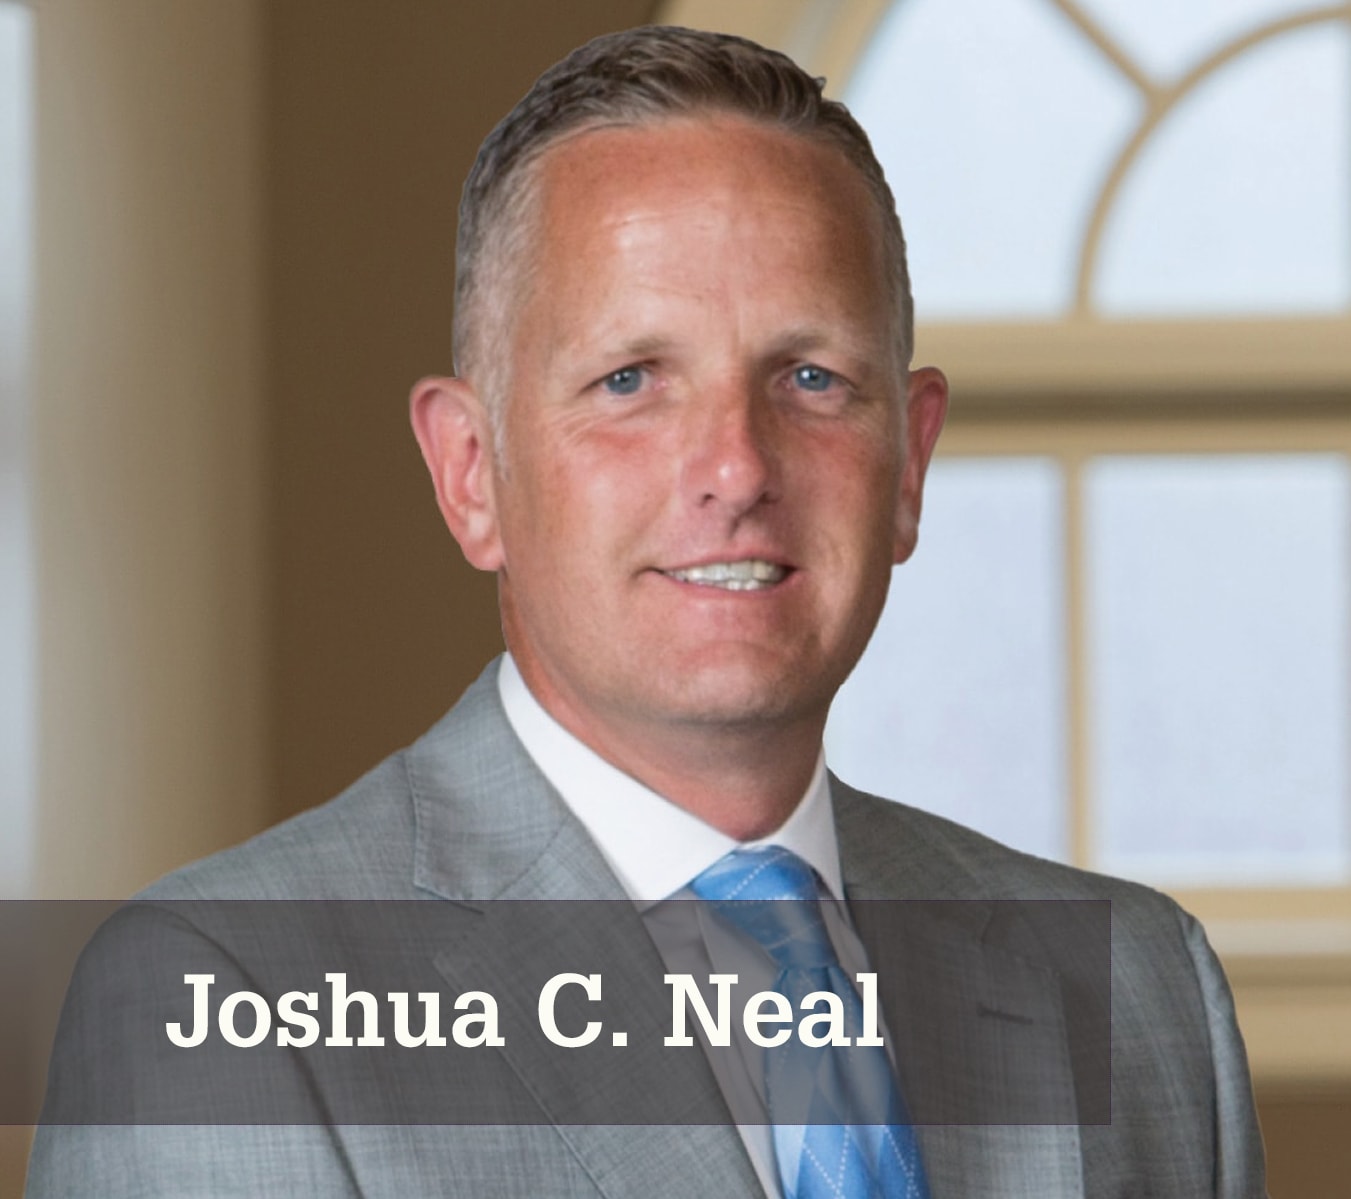 Joshua C. Neal